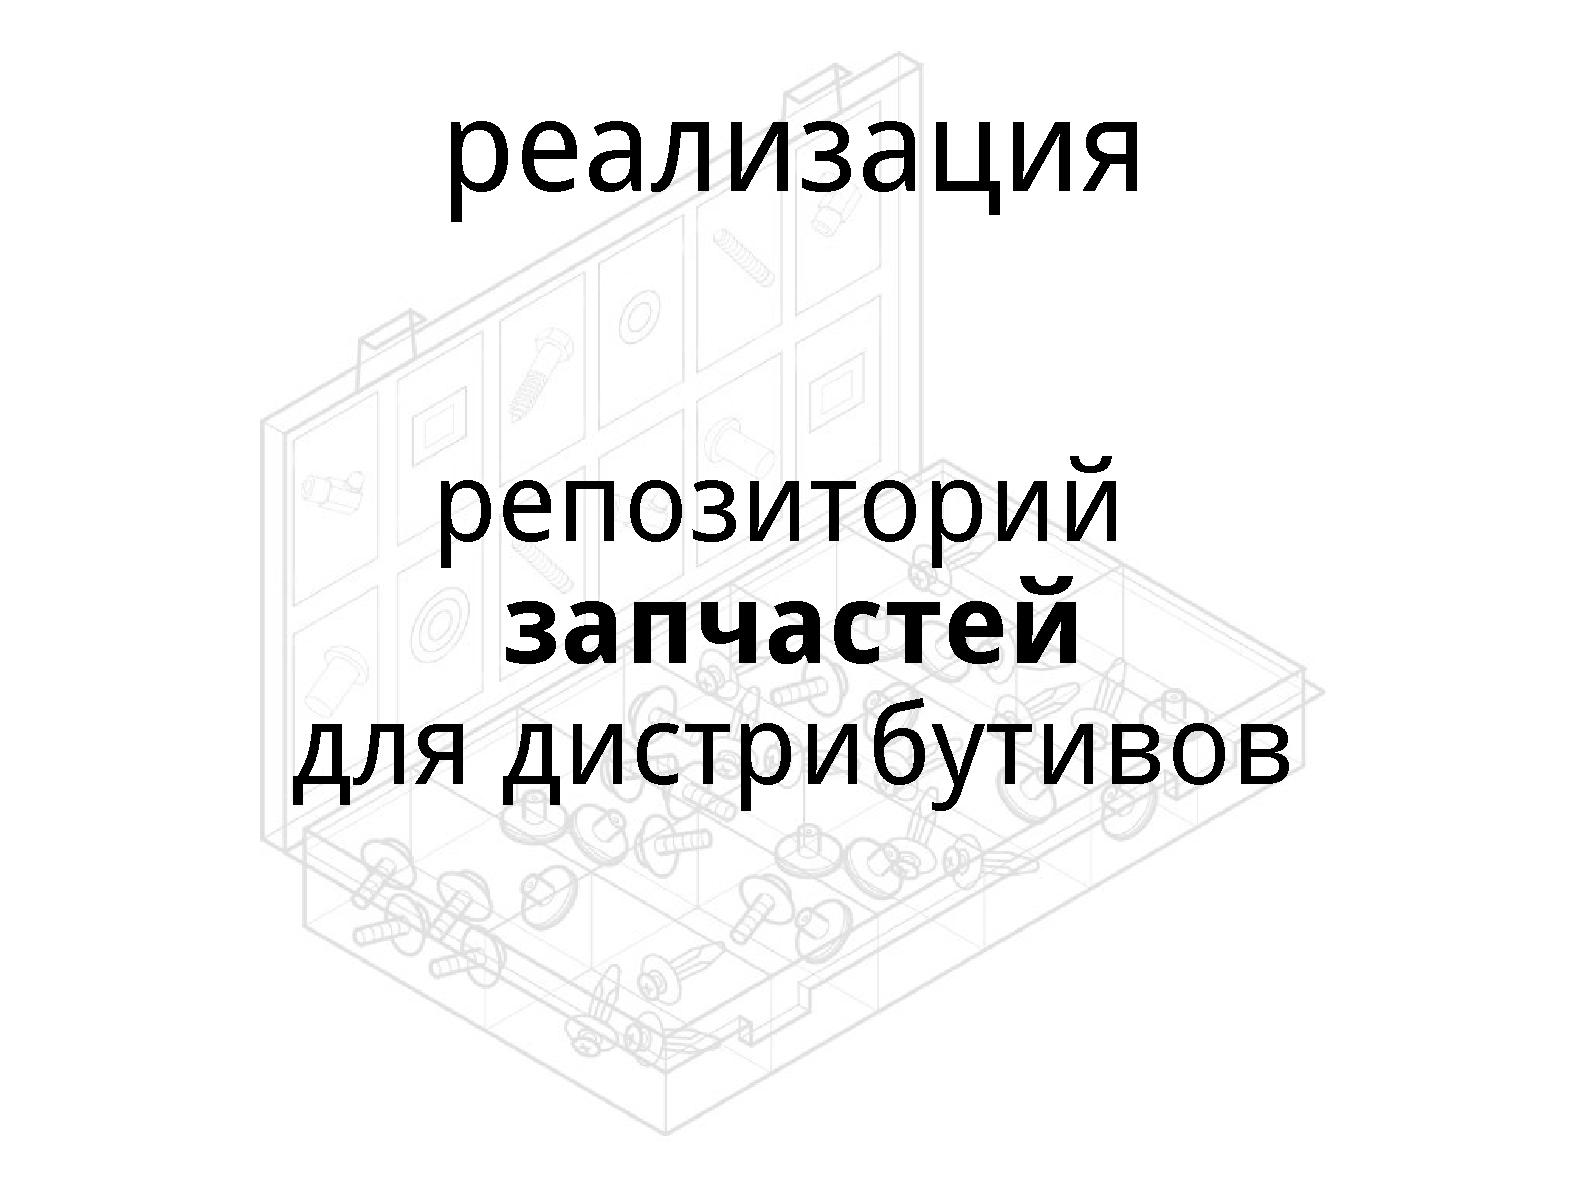 Файл:Mkimage-profiles. Образы трёх лет (Михаил Шигорин, OSDN-UA-2013).pdf